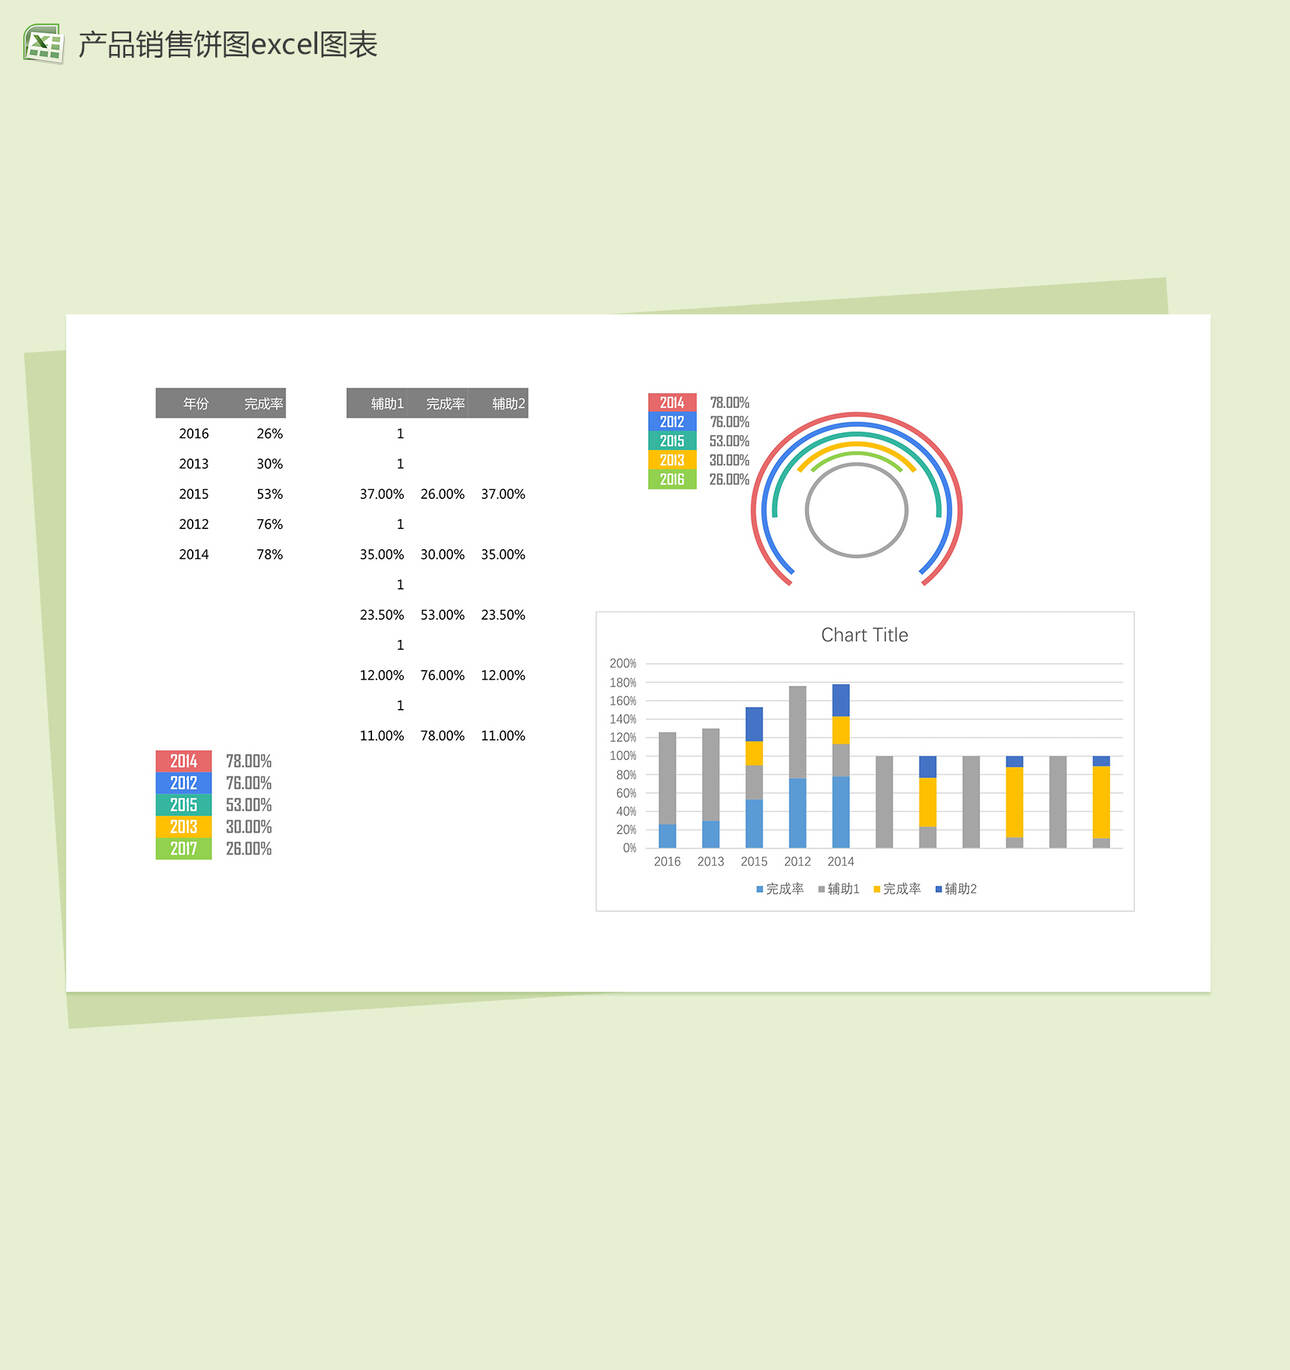 公司销售部门产品销量统计分析excel图表模板